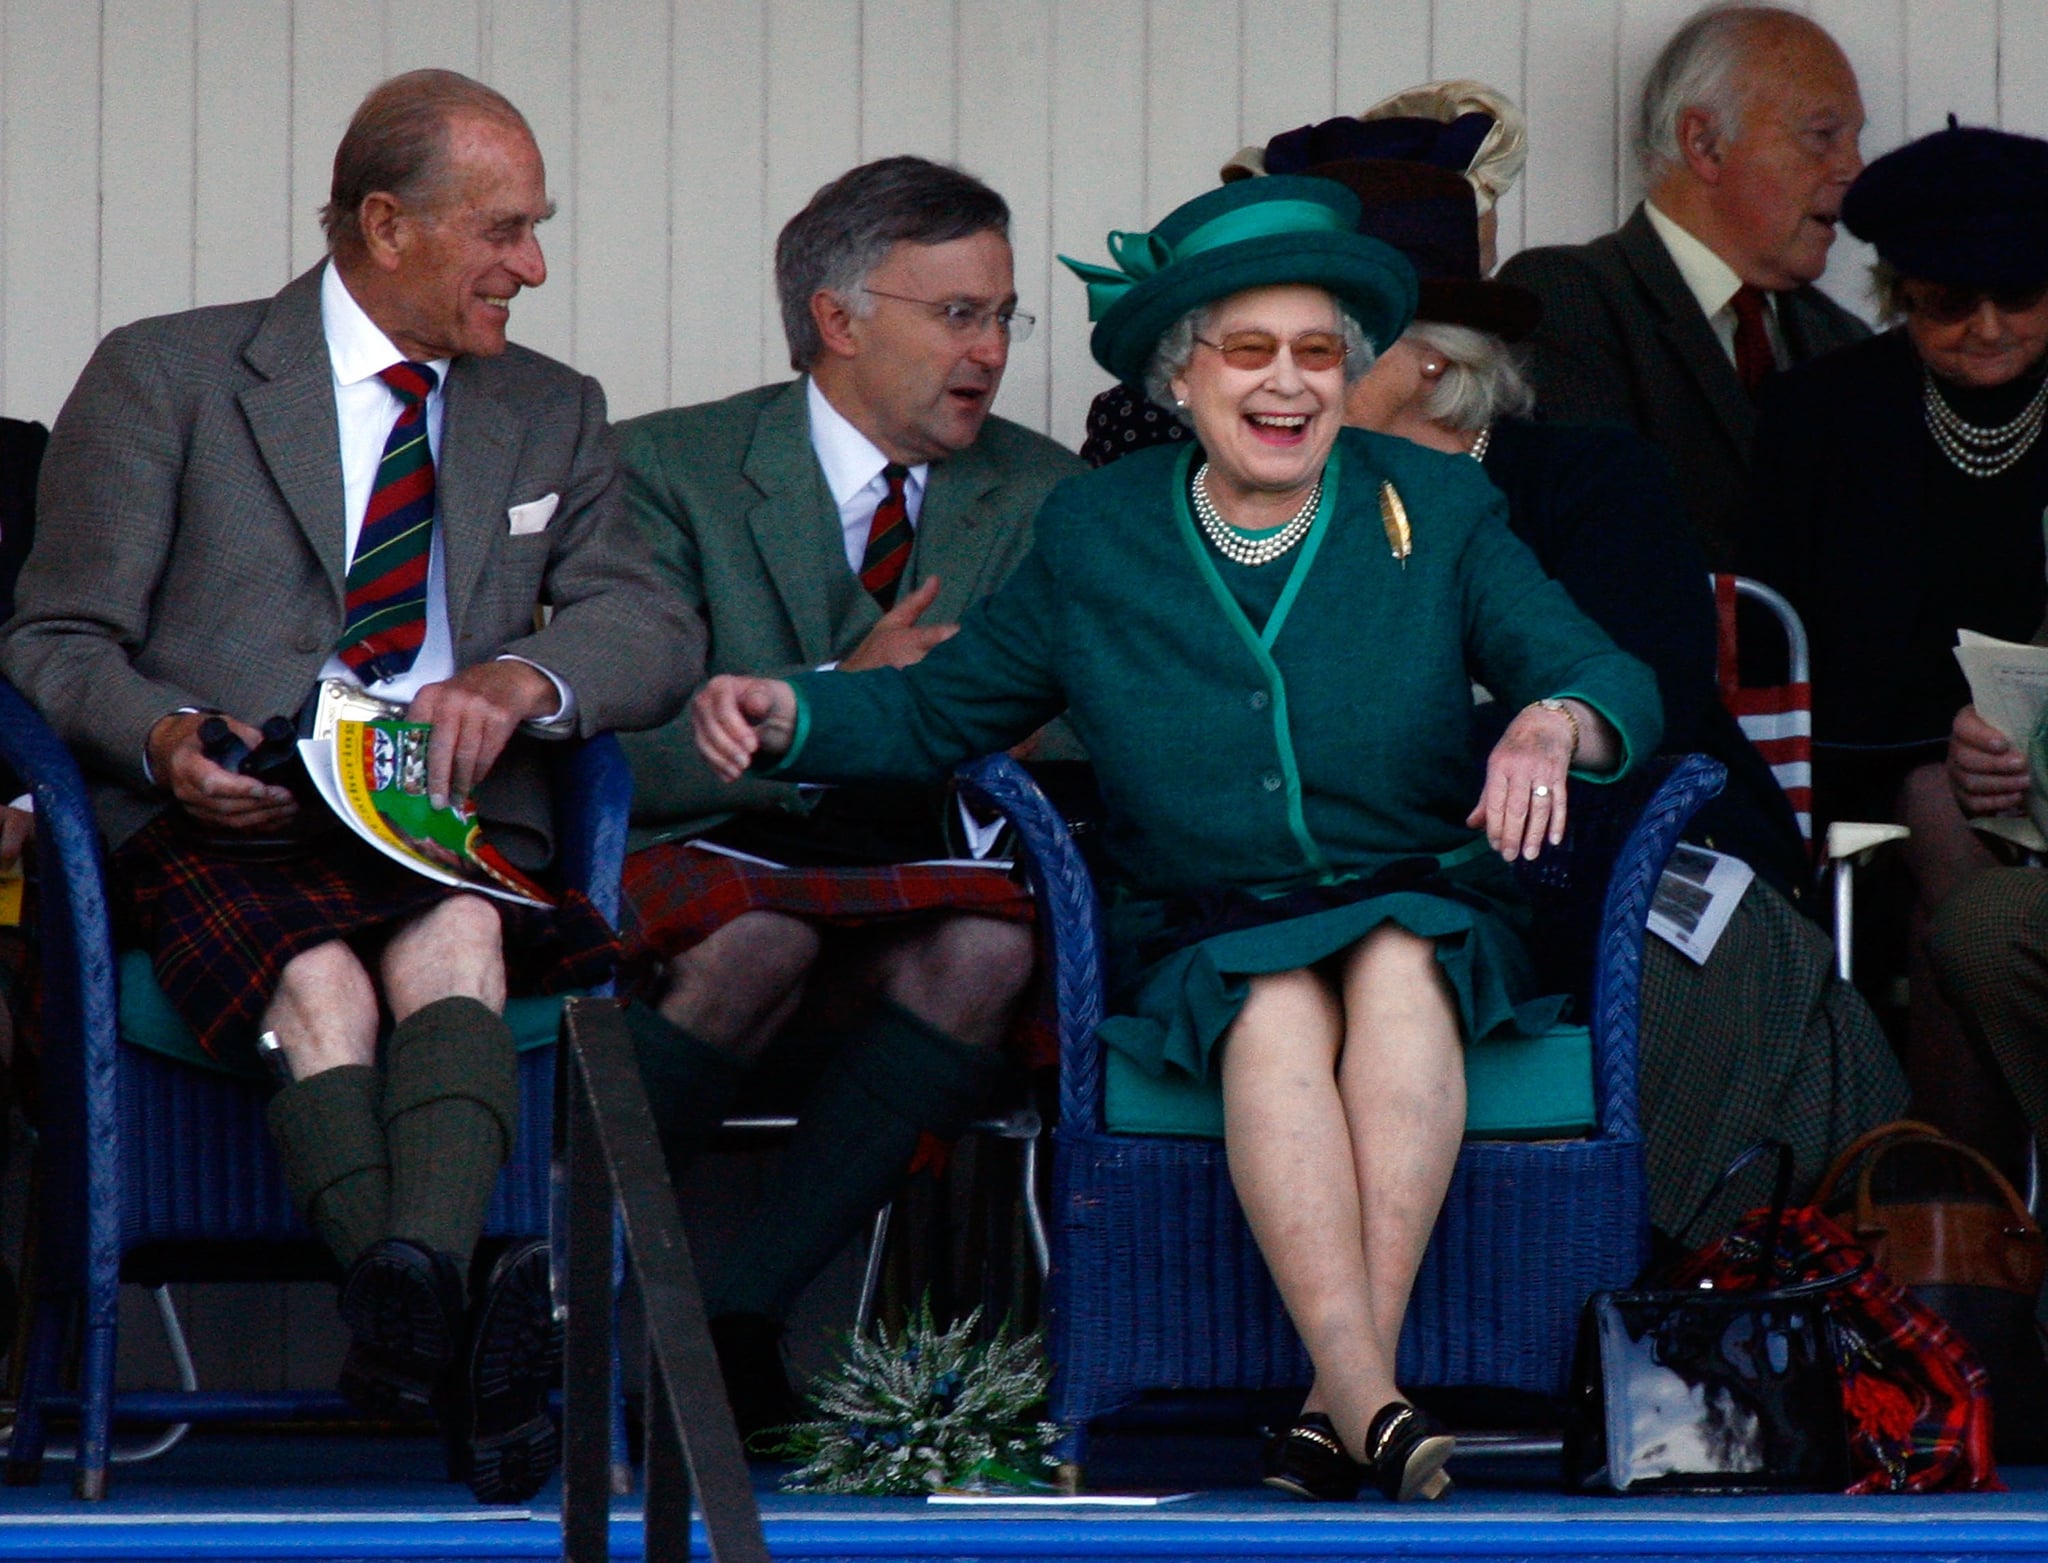 Queen Elizabeth II watches at the Braemar Gathering in 2007